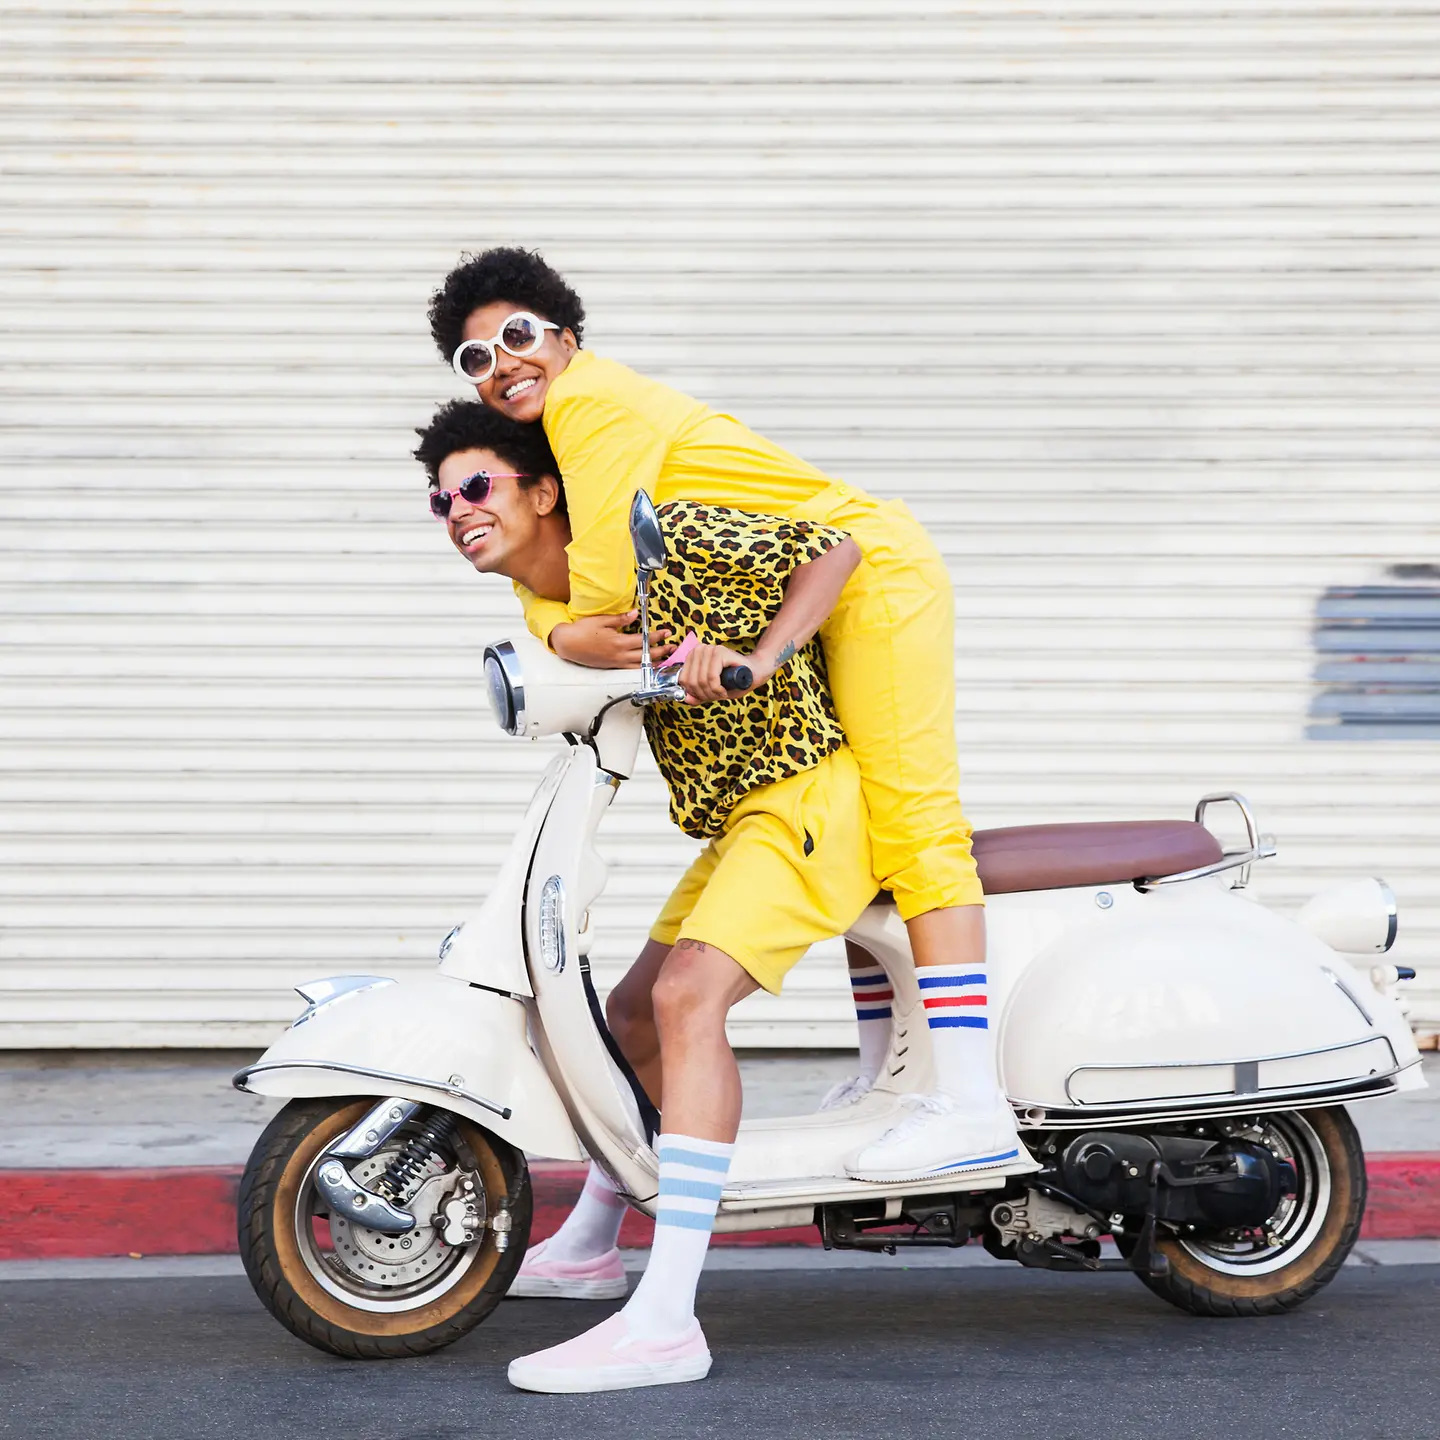 Zwei junge Menschen sitzen im Urlaub auf einem Motorrad.